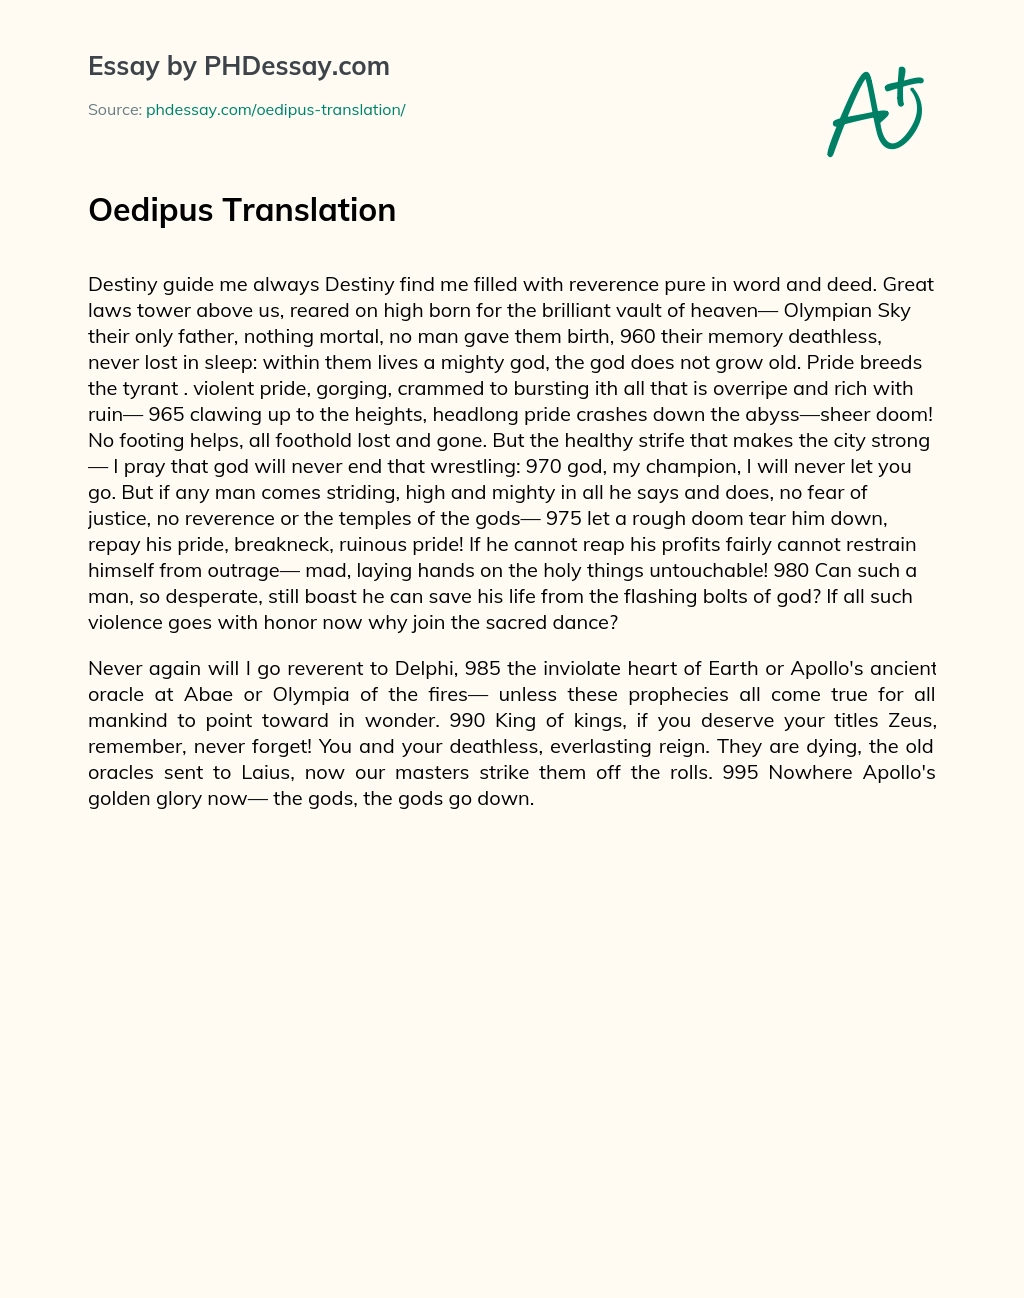 Oedipus Translation essay